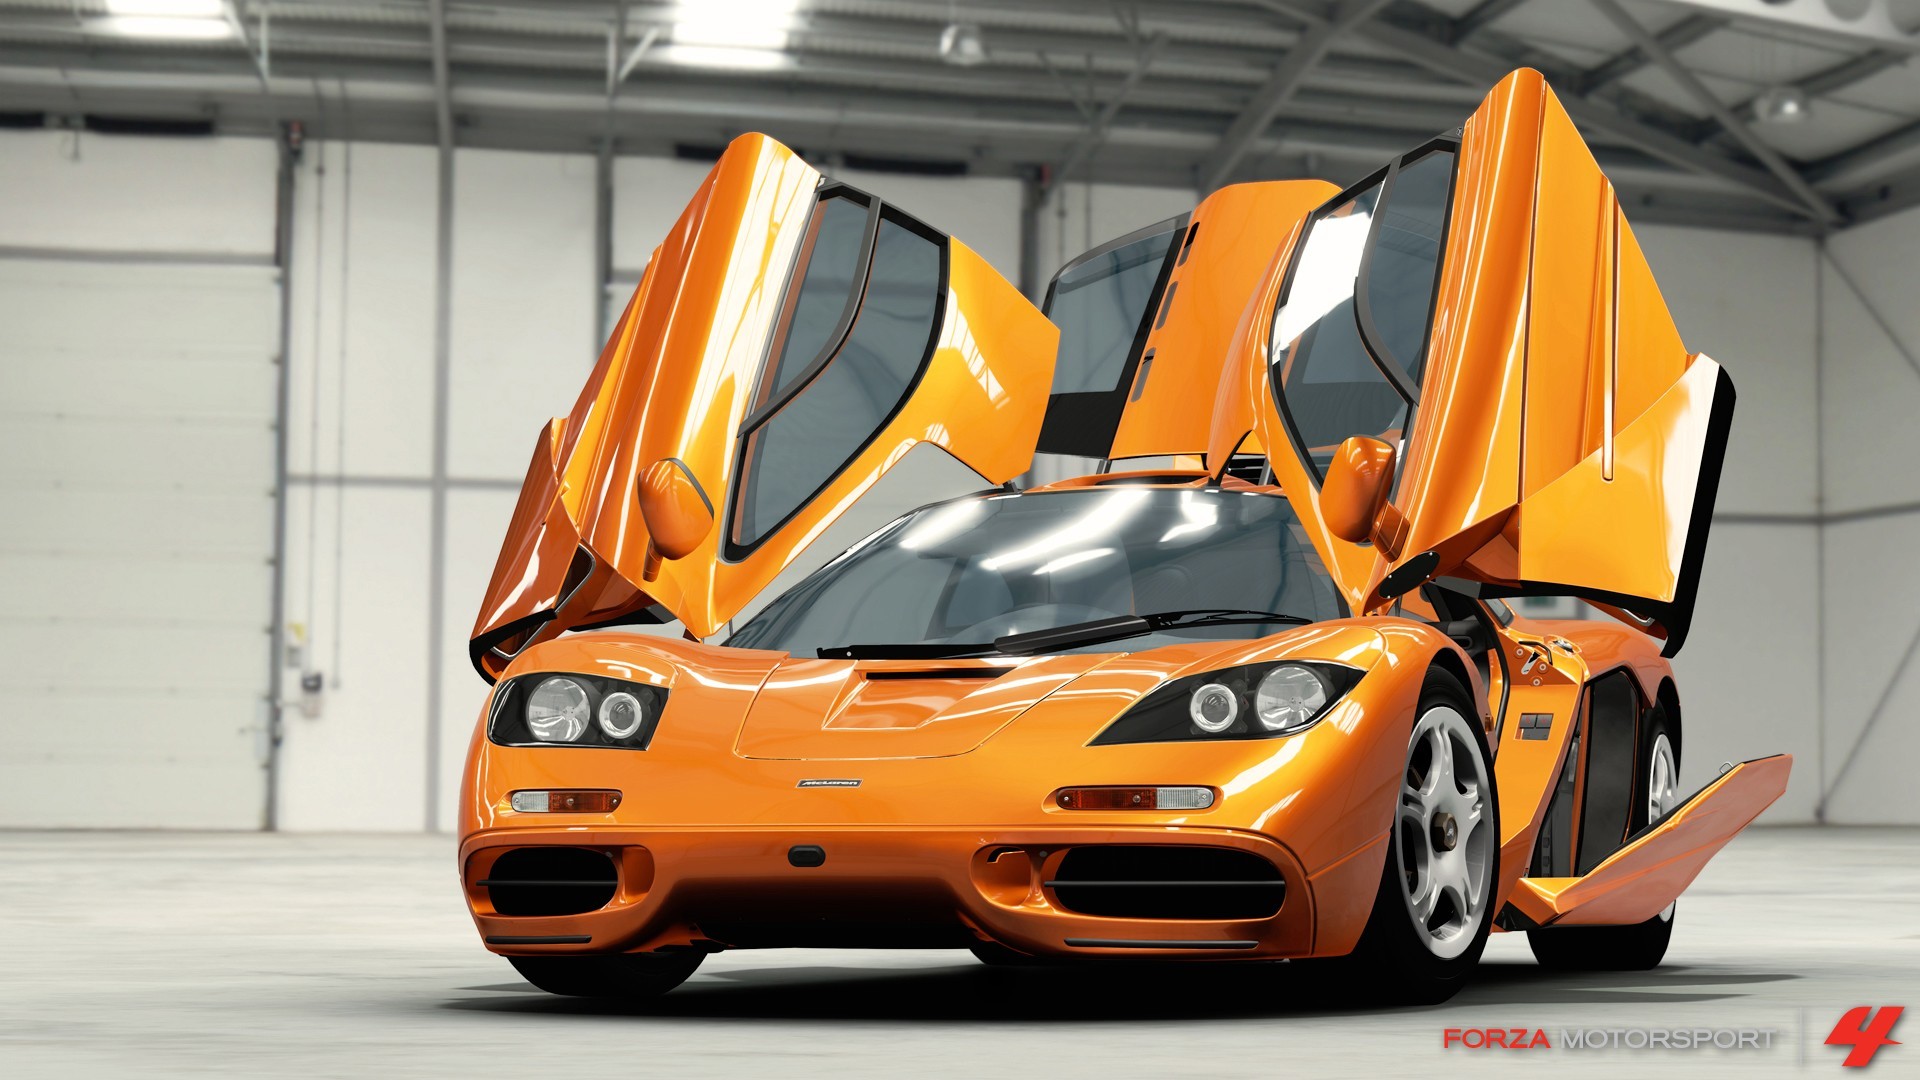 General 1920x1080 McLaren F1 Forza Motorsport 4 video games car orange cars scissor doors McLaren vehicle Turn 10 Studios